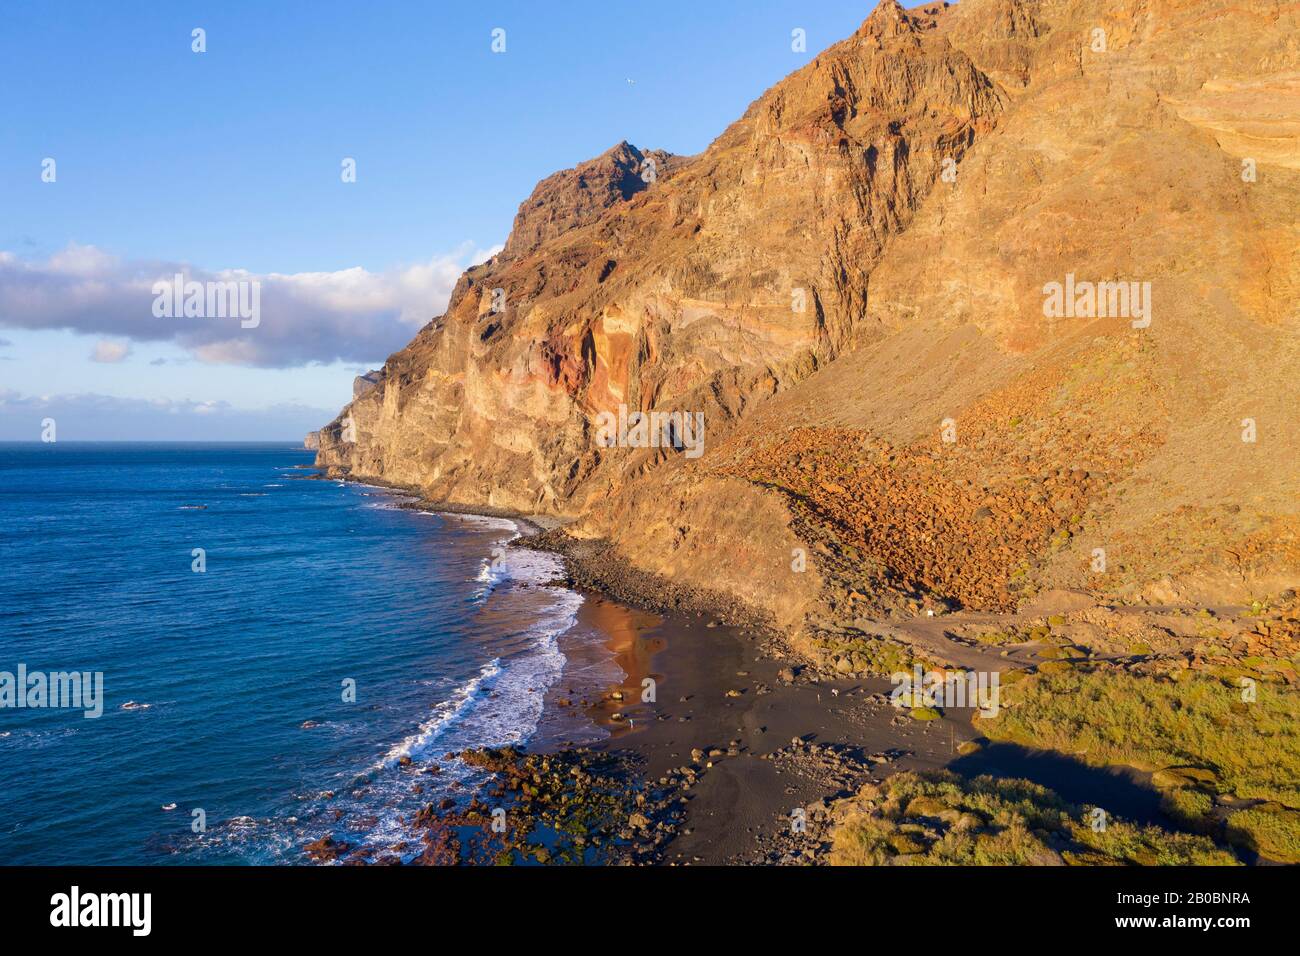 Strand Playa del Ingles, Berg Riscos de La Merica, Valle Gran Rey, Luftbild, La Gomera, Kanarische Inseln, Spanien Stockfoto